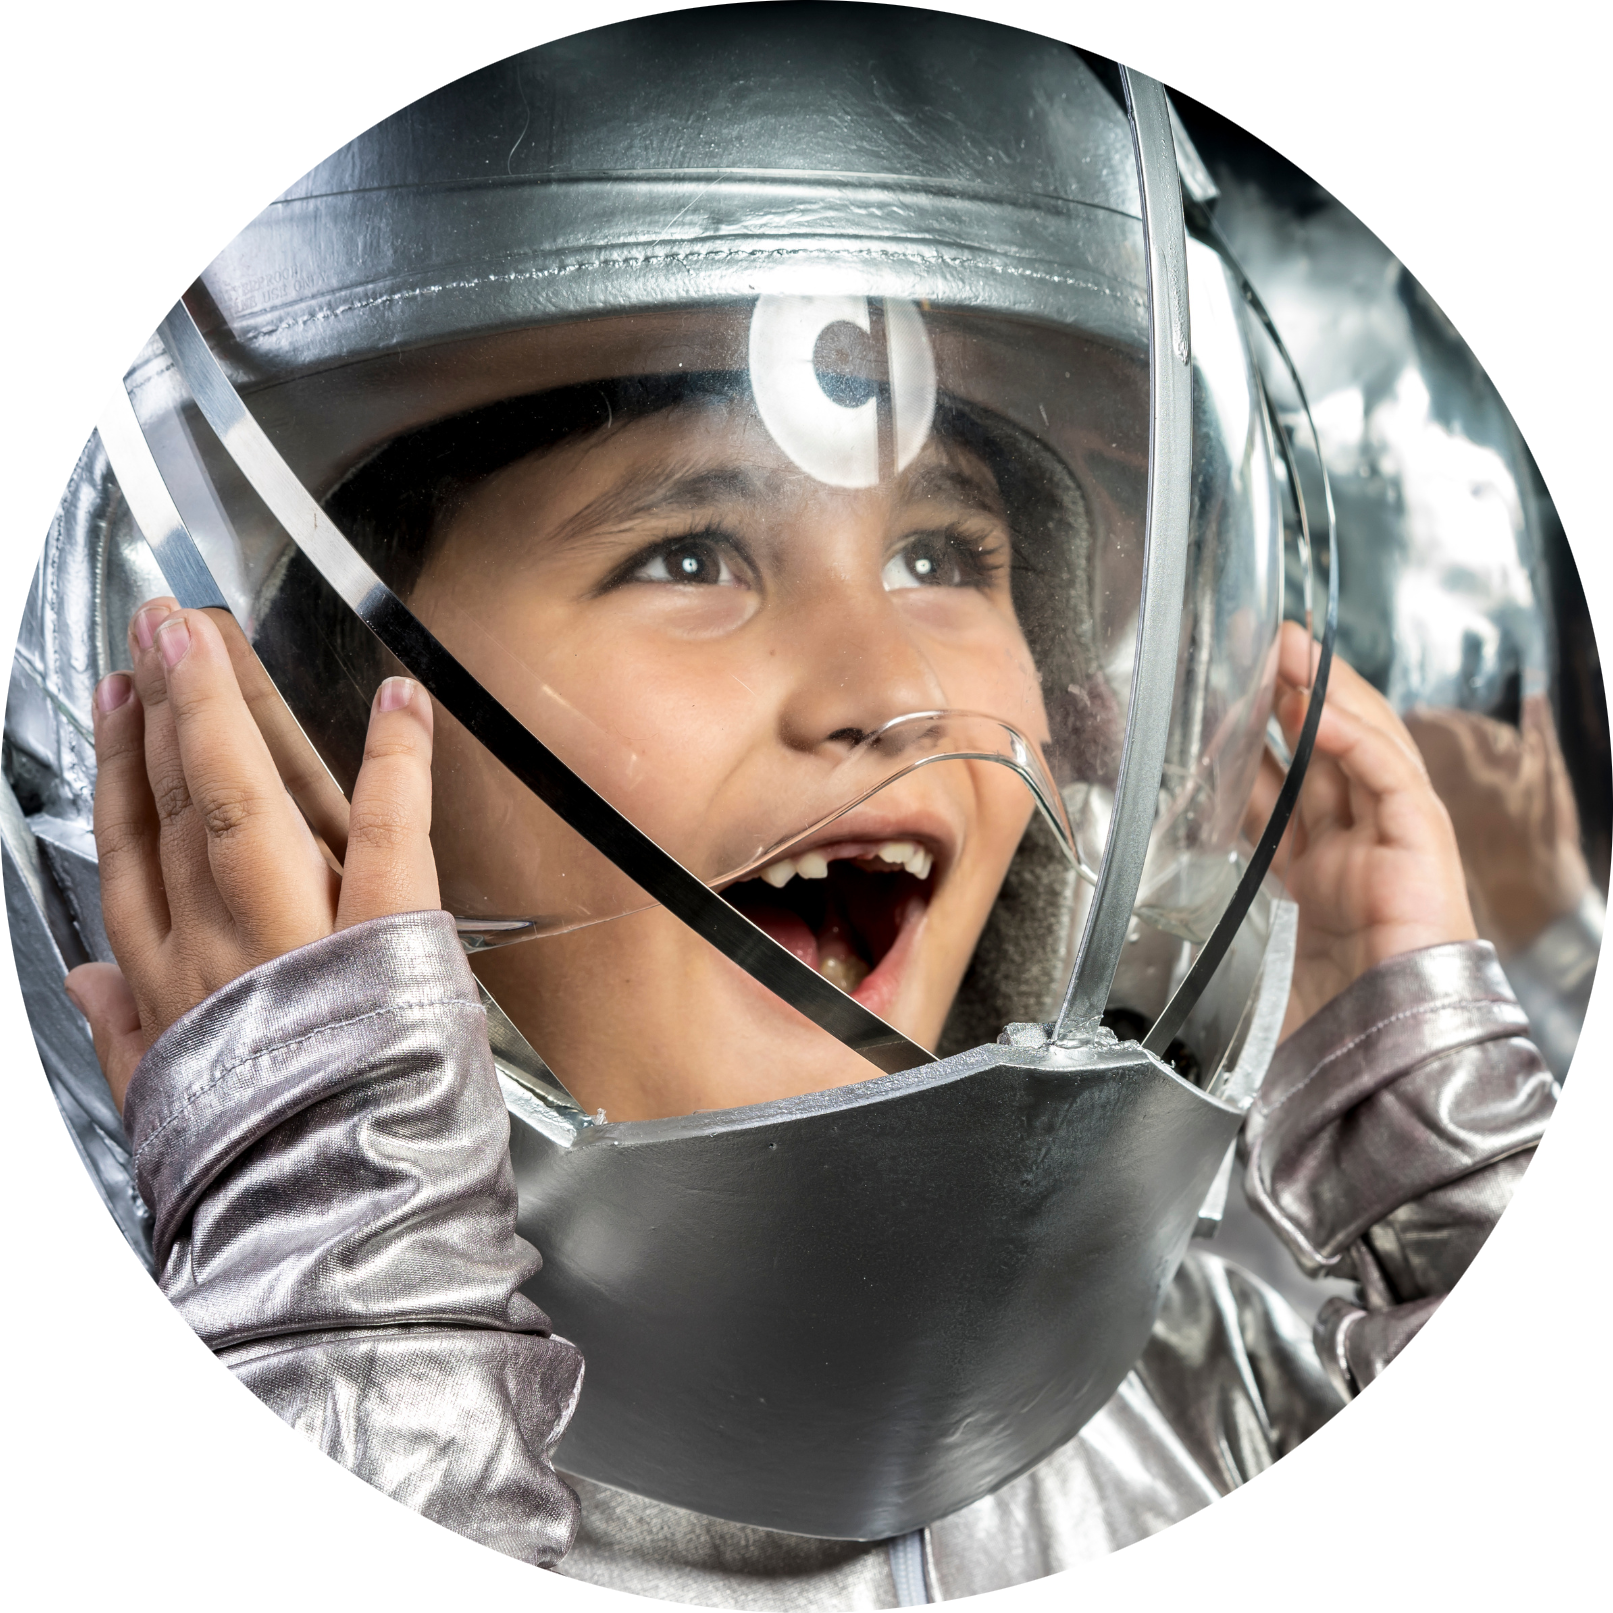 A little kid, wearing an astronaut helmet, eyes lit up in awe & wonder.